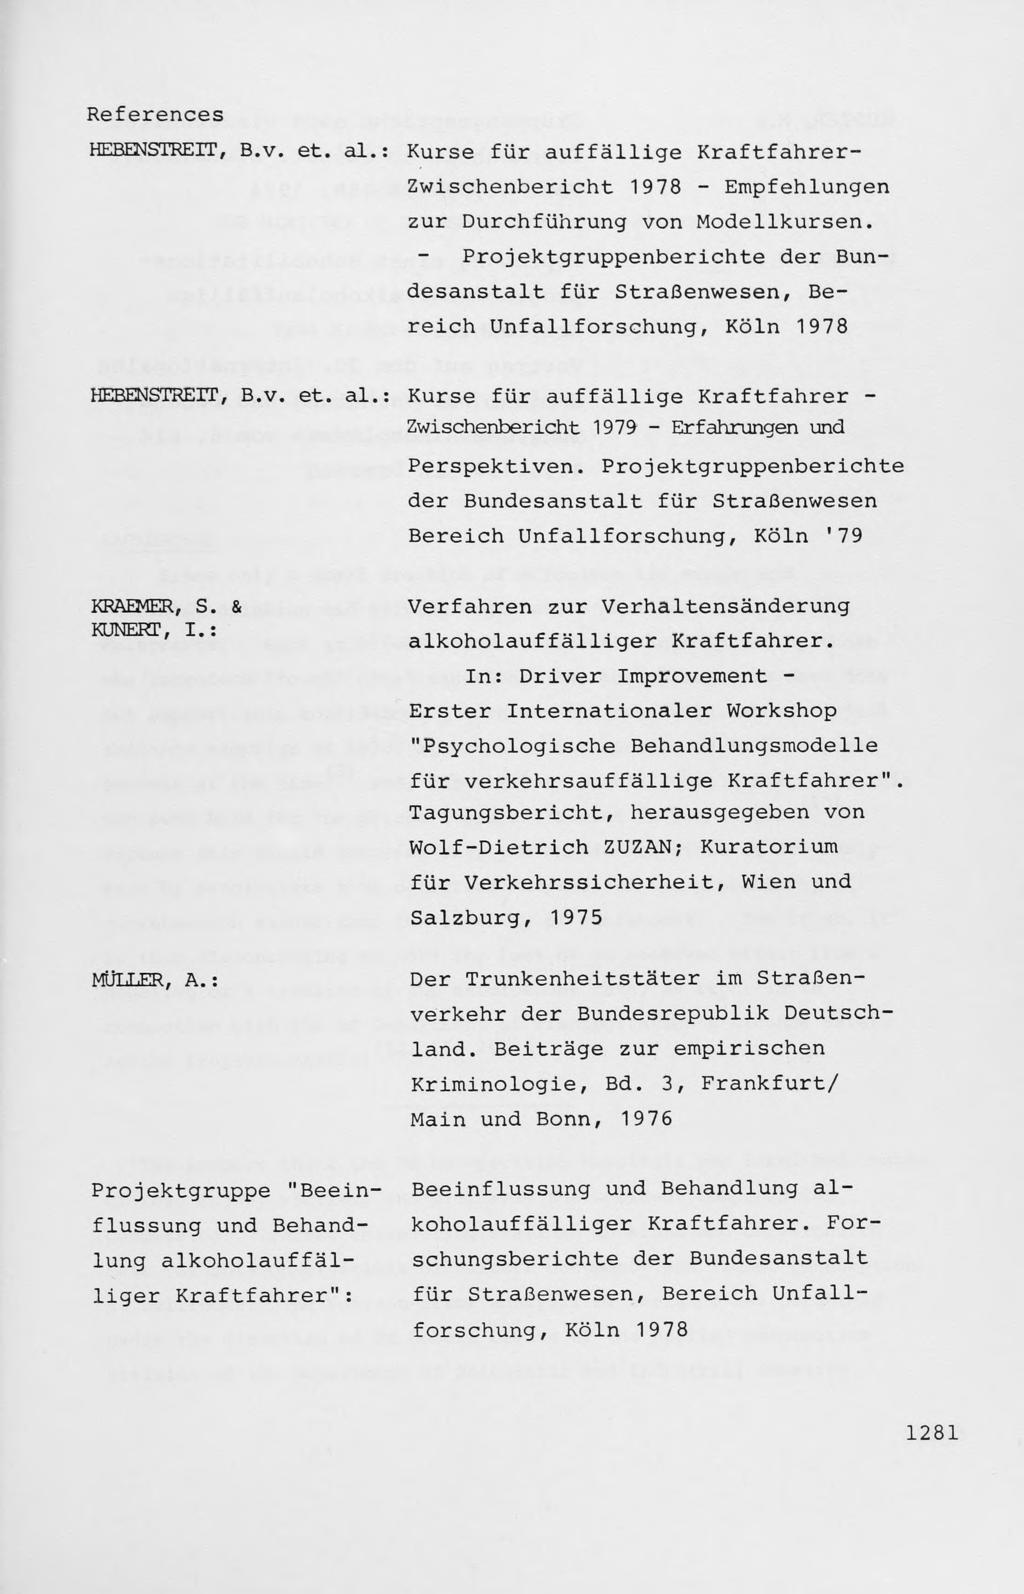 References HEBENSTREIT, B.v. et. al.: Kurse fur auffallige Kraftfahrer- Zwischenbericht 1978 - Empfehlungen zur Durchfiihrung von Modellkursen.